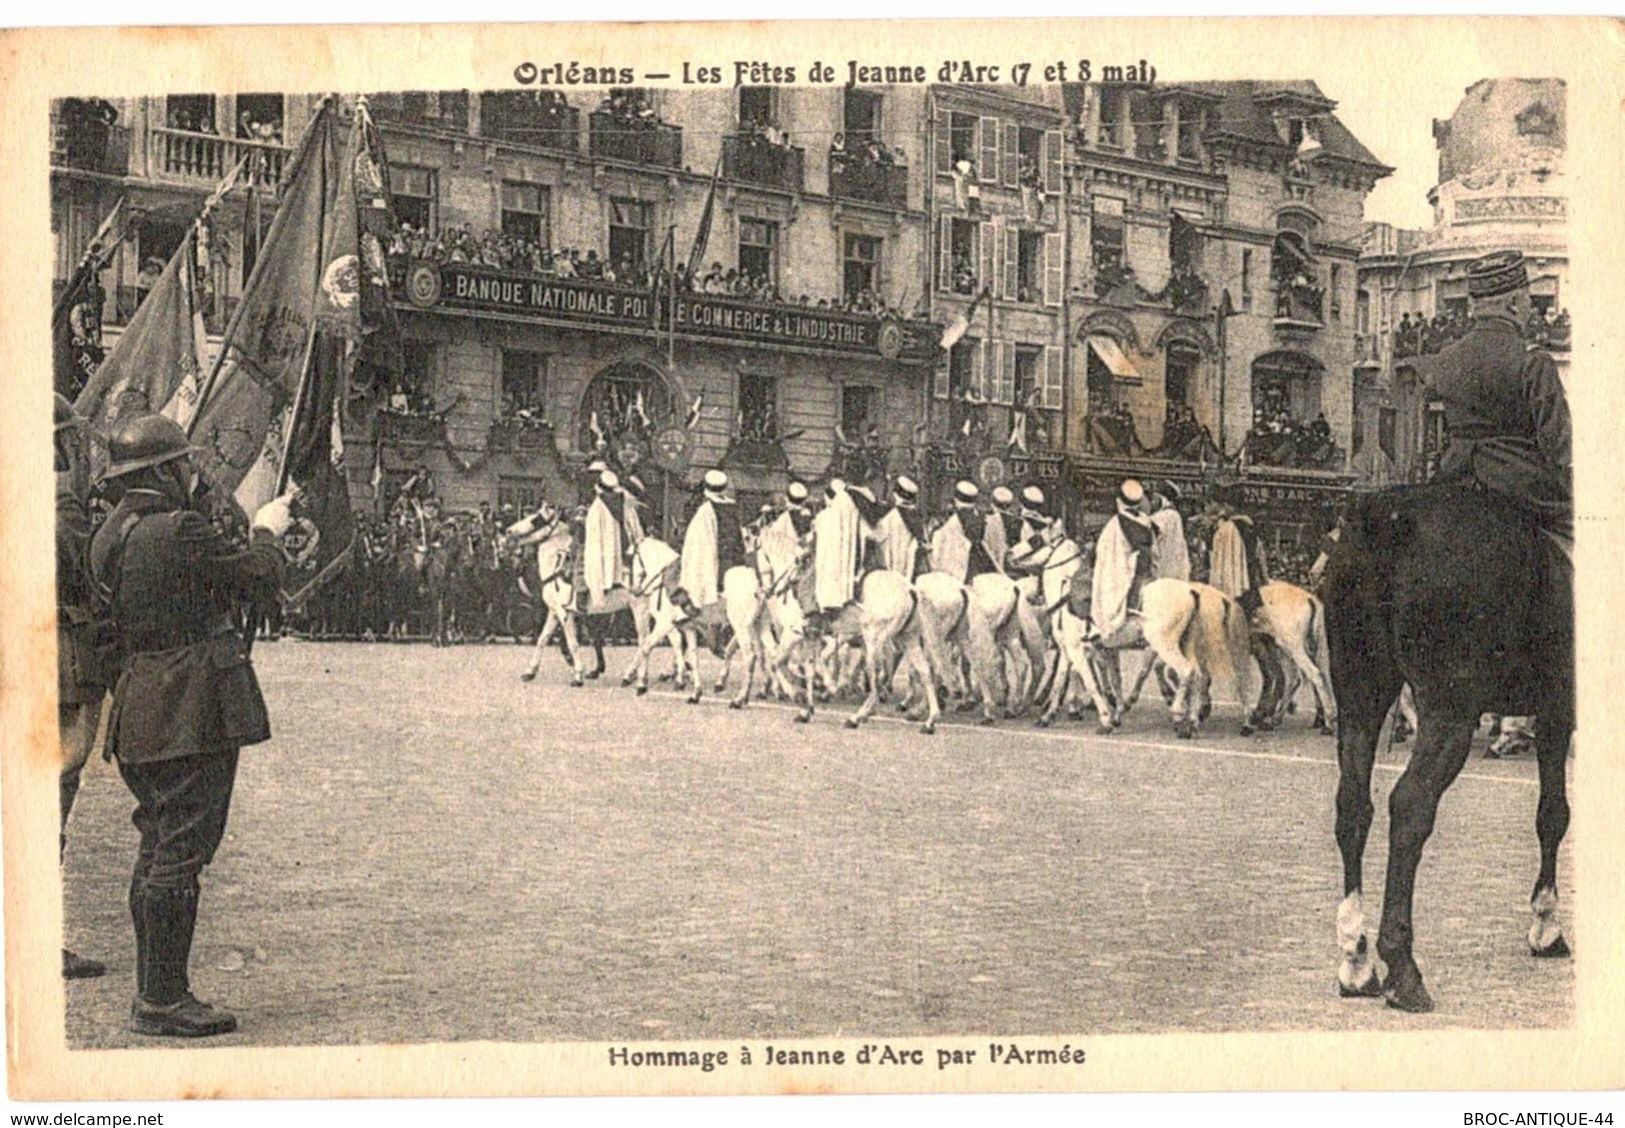 CPA N°18485 - ORLEANS - FETES DE JEANNE D' ARC 7 ET 8 MAI 1931 - HOMMAGE A JEANNE D' ARC PAR L' ARMEE (SAPHIS ALGERIENS) - Orleans